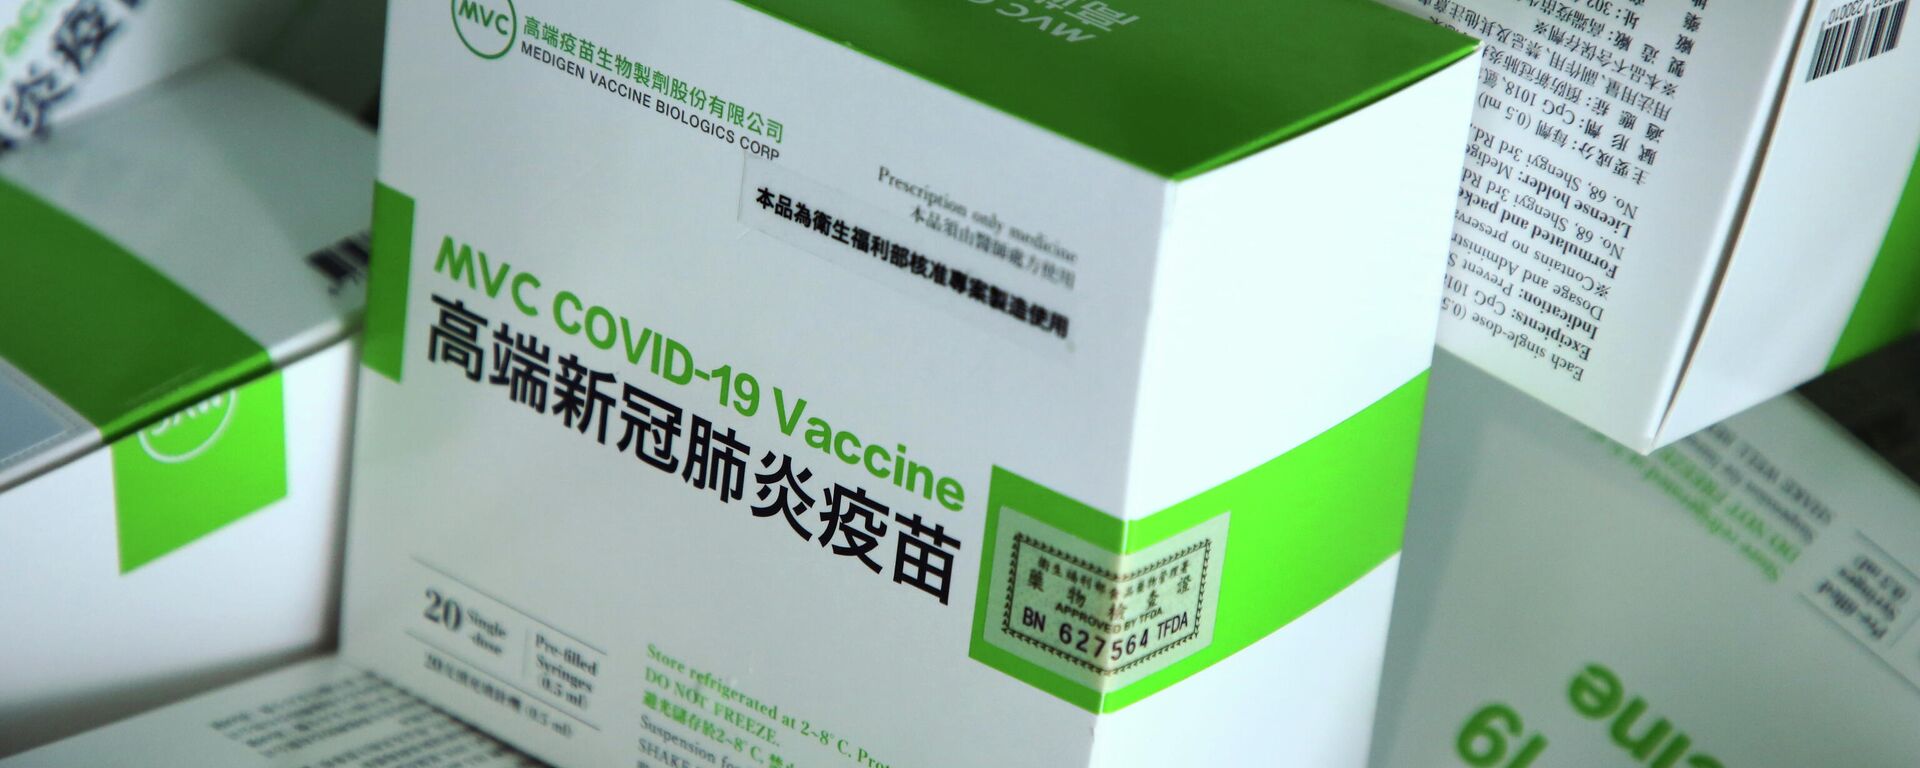 La vacuna contra el COVID-19 del laboratorio Medigen Vaccine Biologics Corporation de Taiwán - Sputnik Mundo, 1920, 01.09.2021